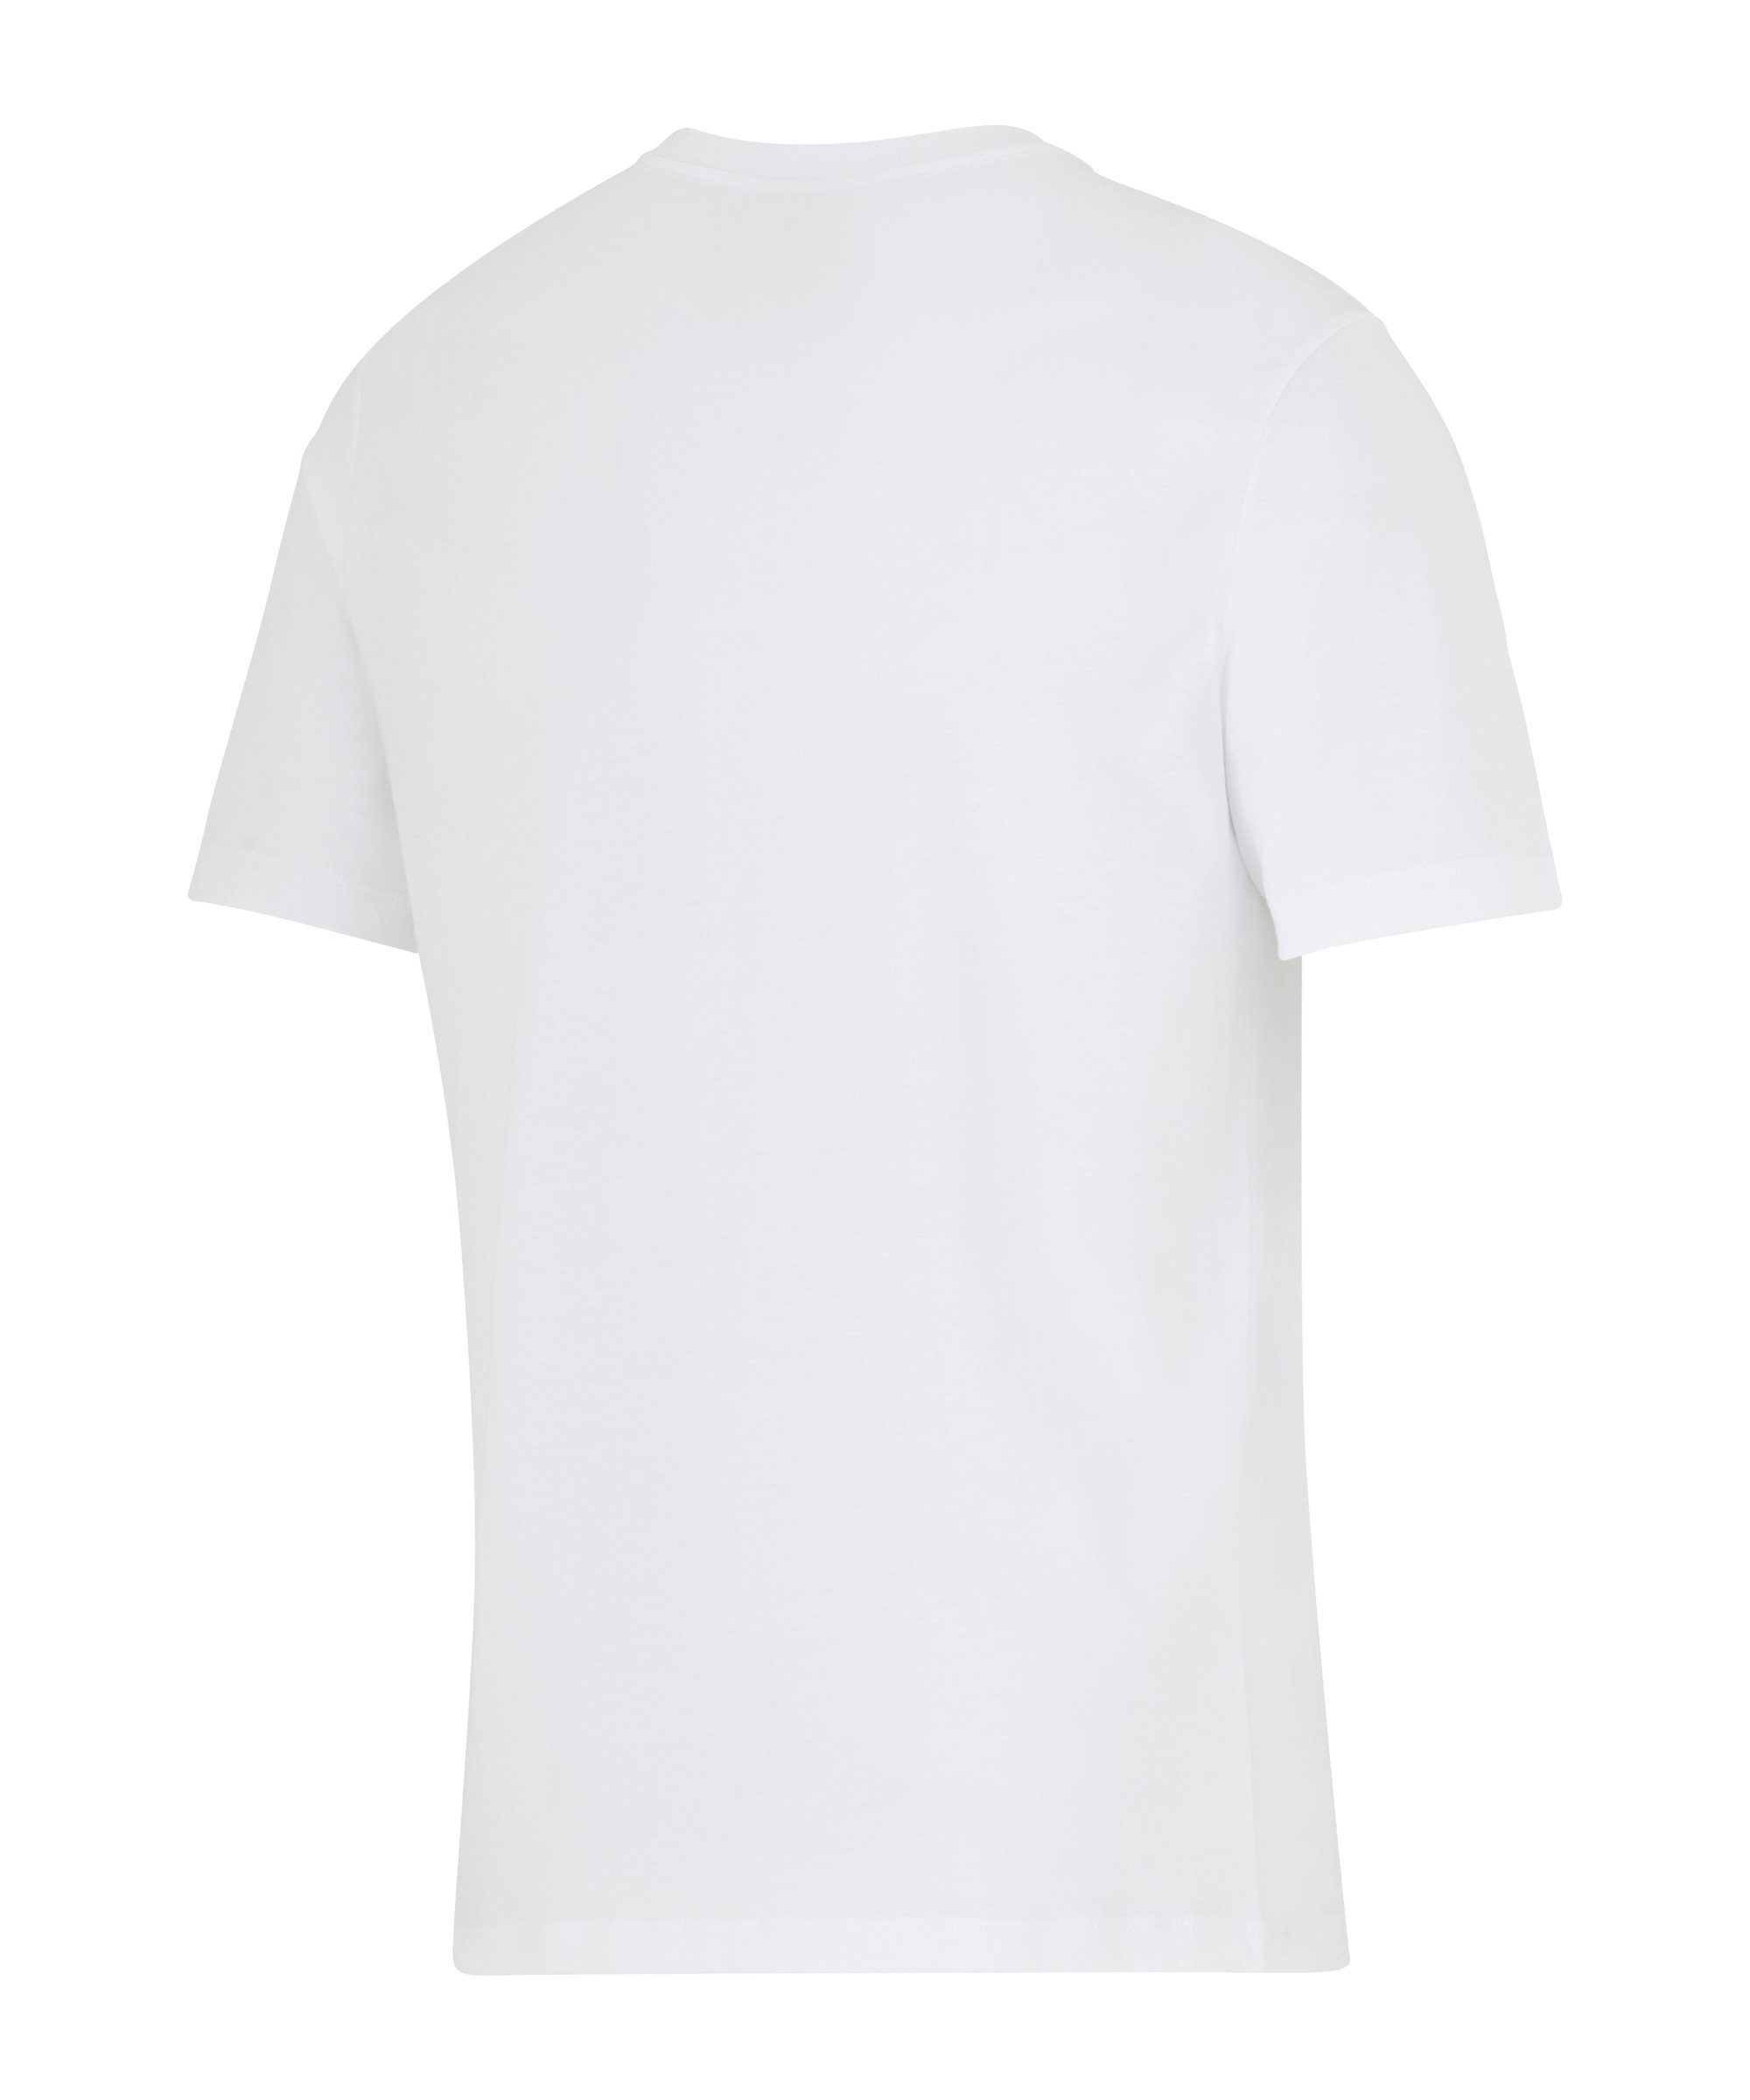 Hertha weiss default T-Shirt BSC Nike T-Shirt